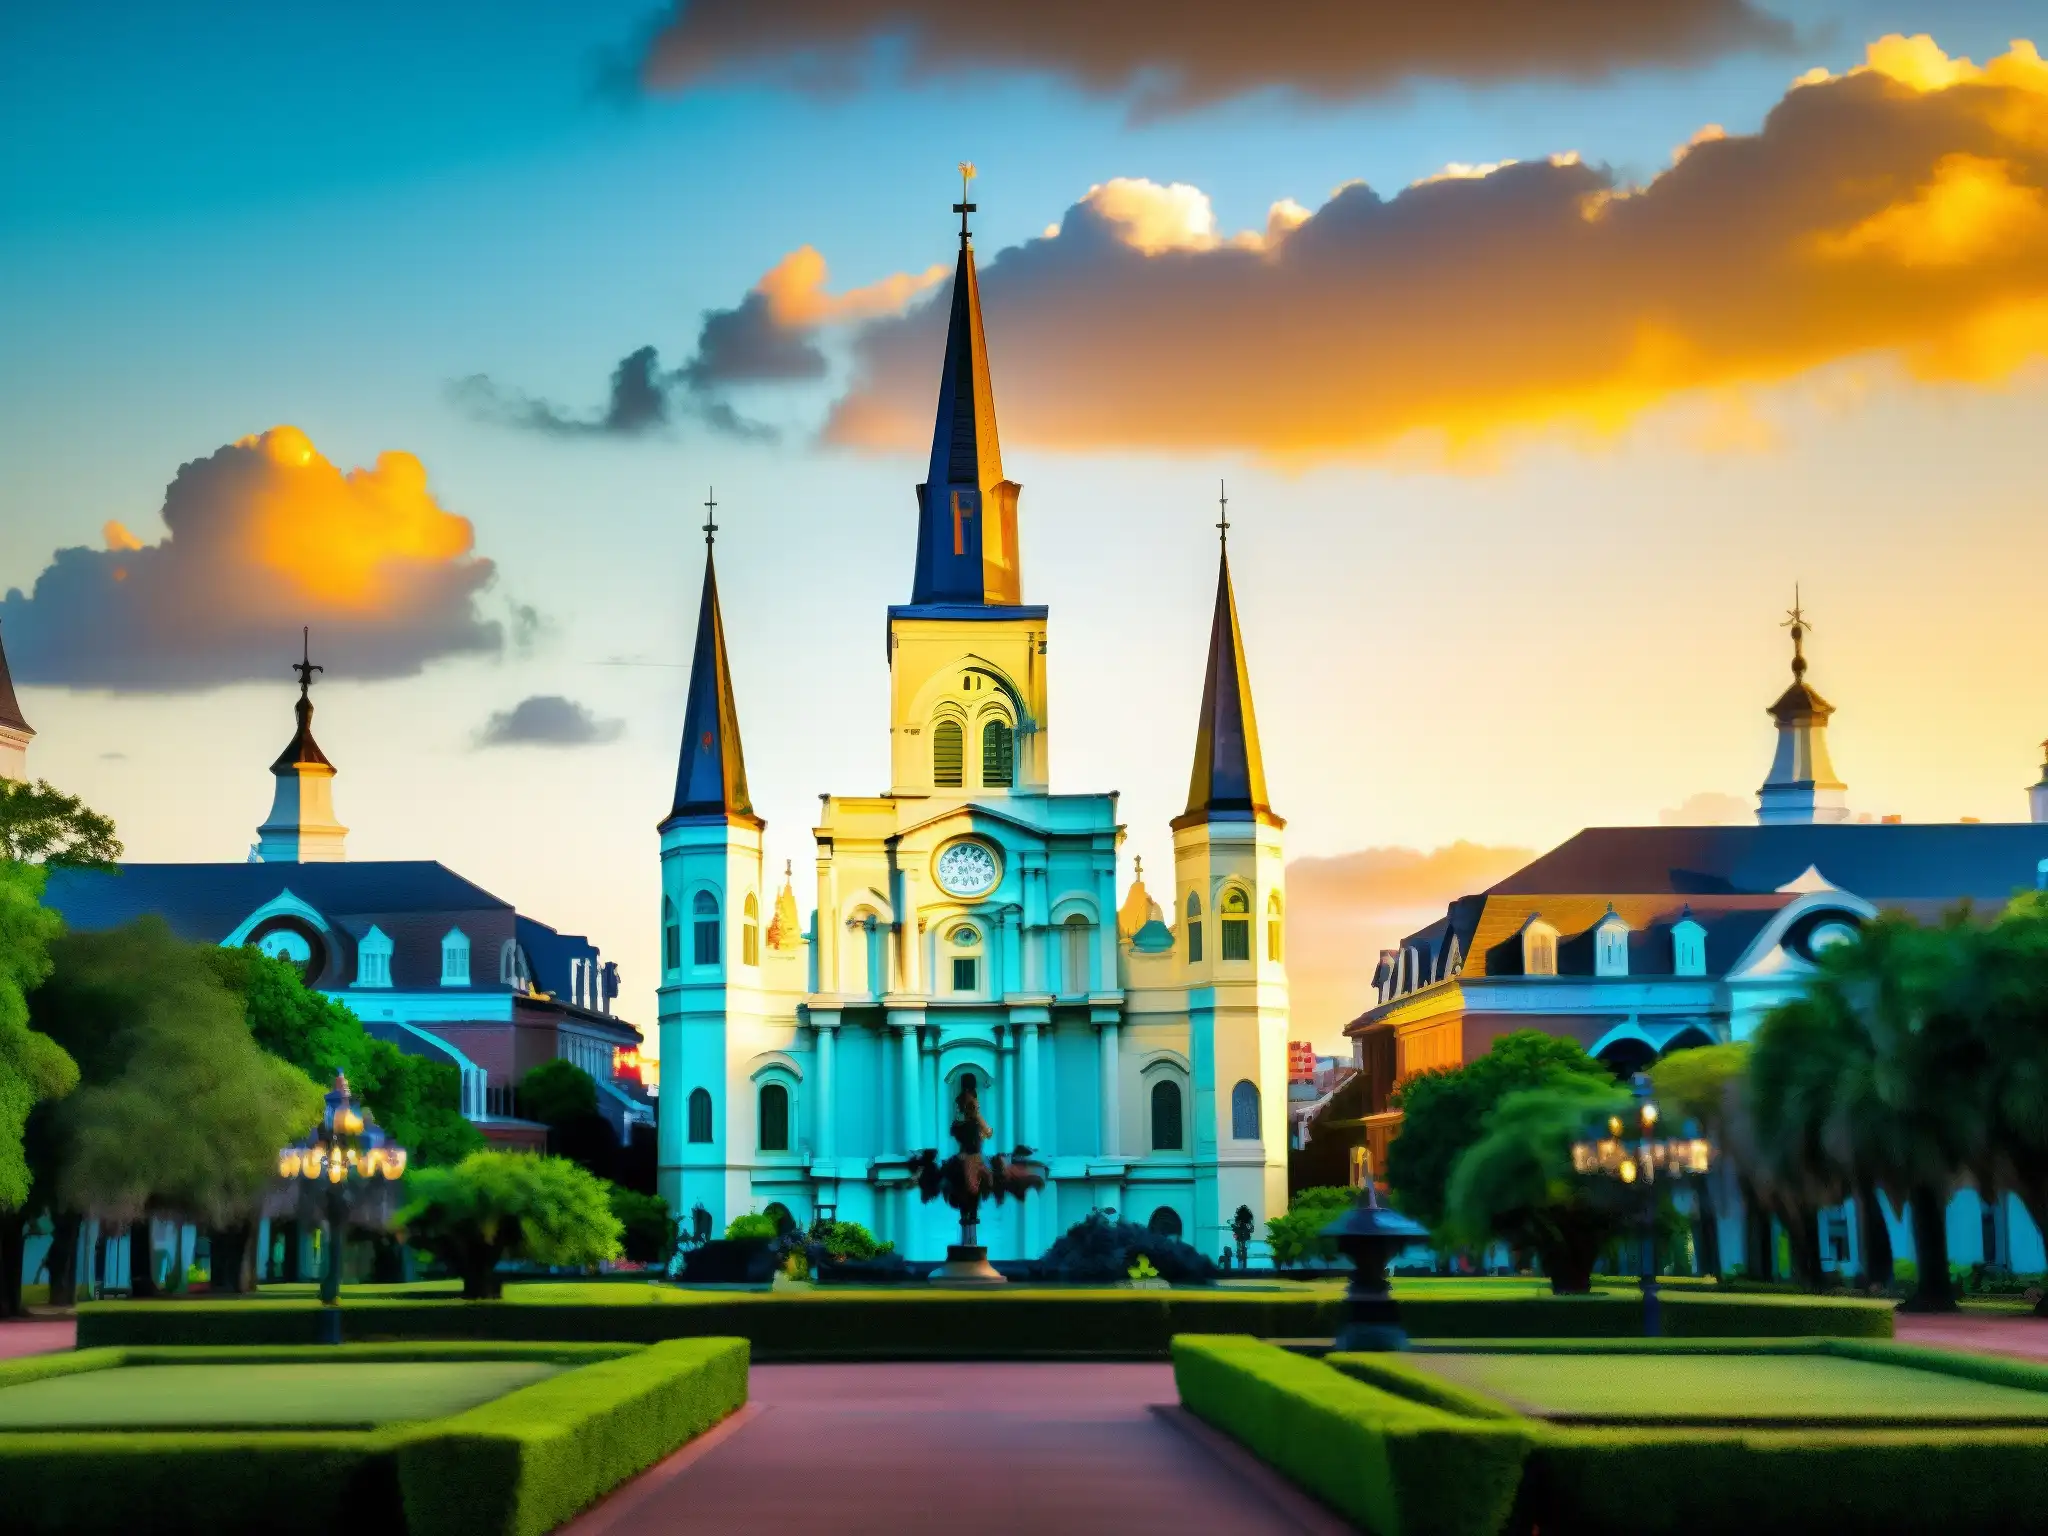 La majestuosa Catedral de San Luis en Nueva Orleans, iluminada por el cálido atardecer, evocando la historia del Fantasma de la Ópera Nueva Orleans